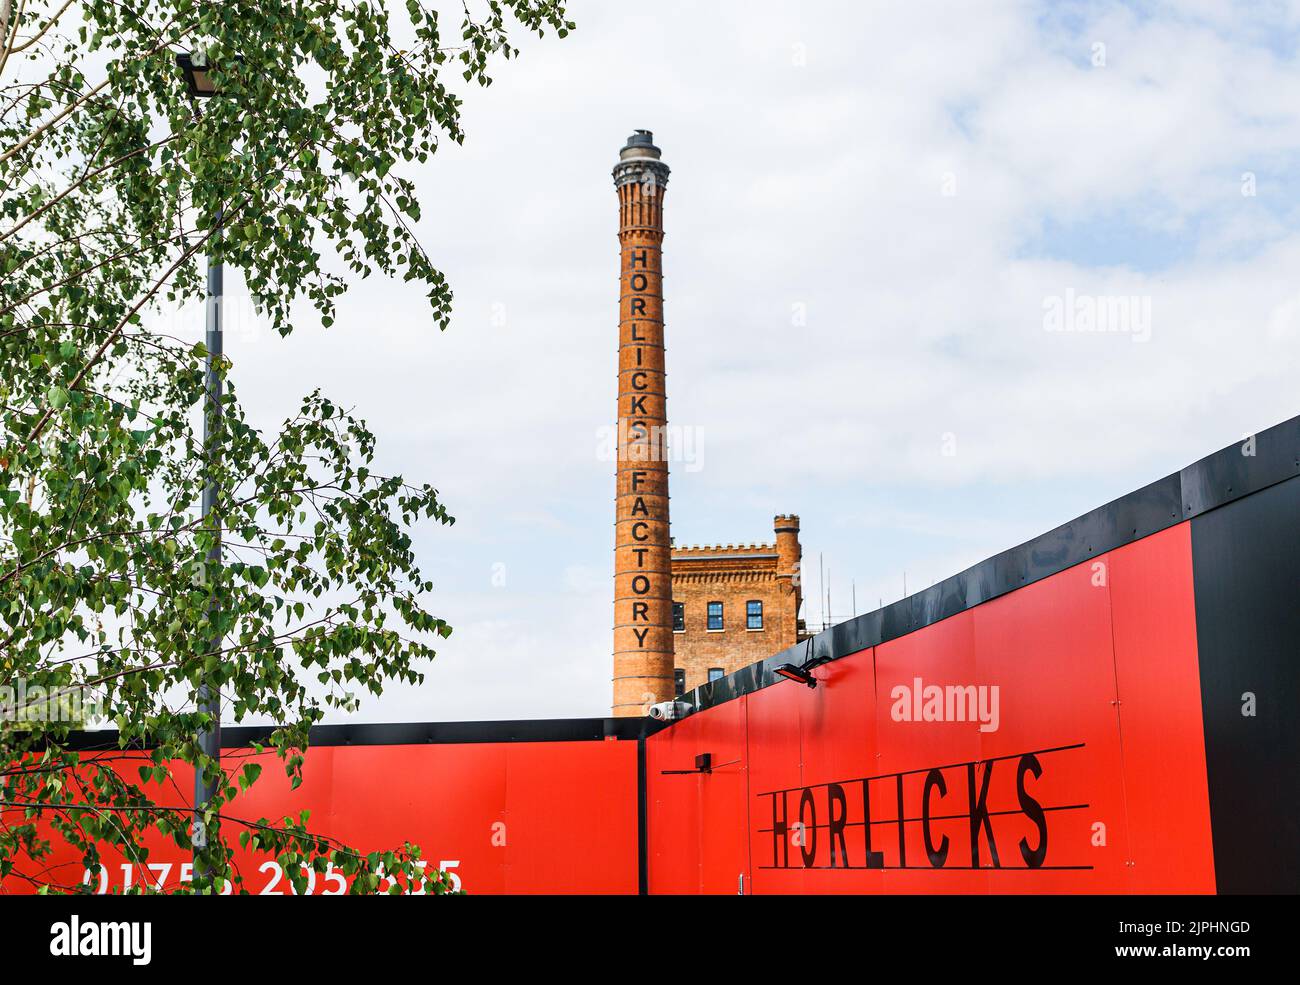 L'emblématique cheminée et tour d'horloge, points de repère de l'ancienne usine de Horlicks, maintenant rebaptisée le quartier de Horlicks, Slough, Berkshire, Royaume-Uni Banque D'Images